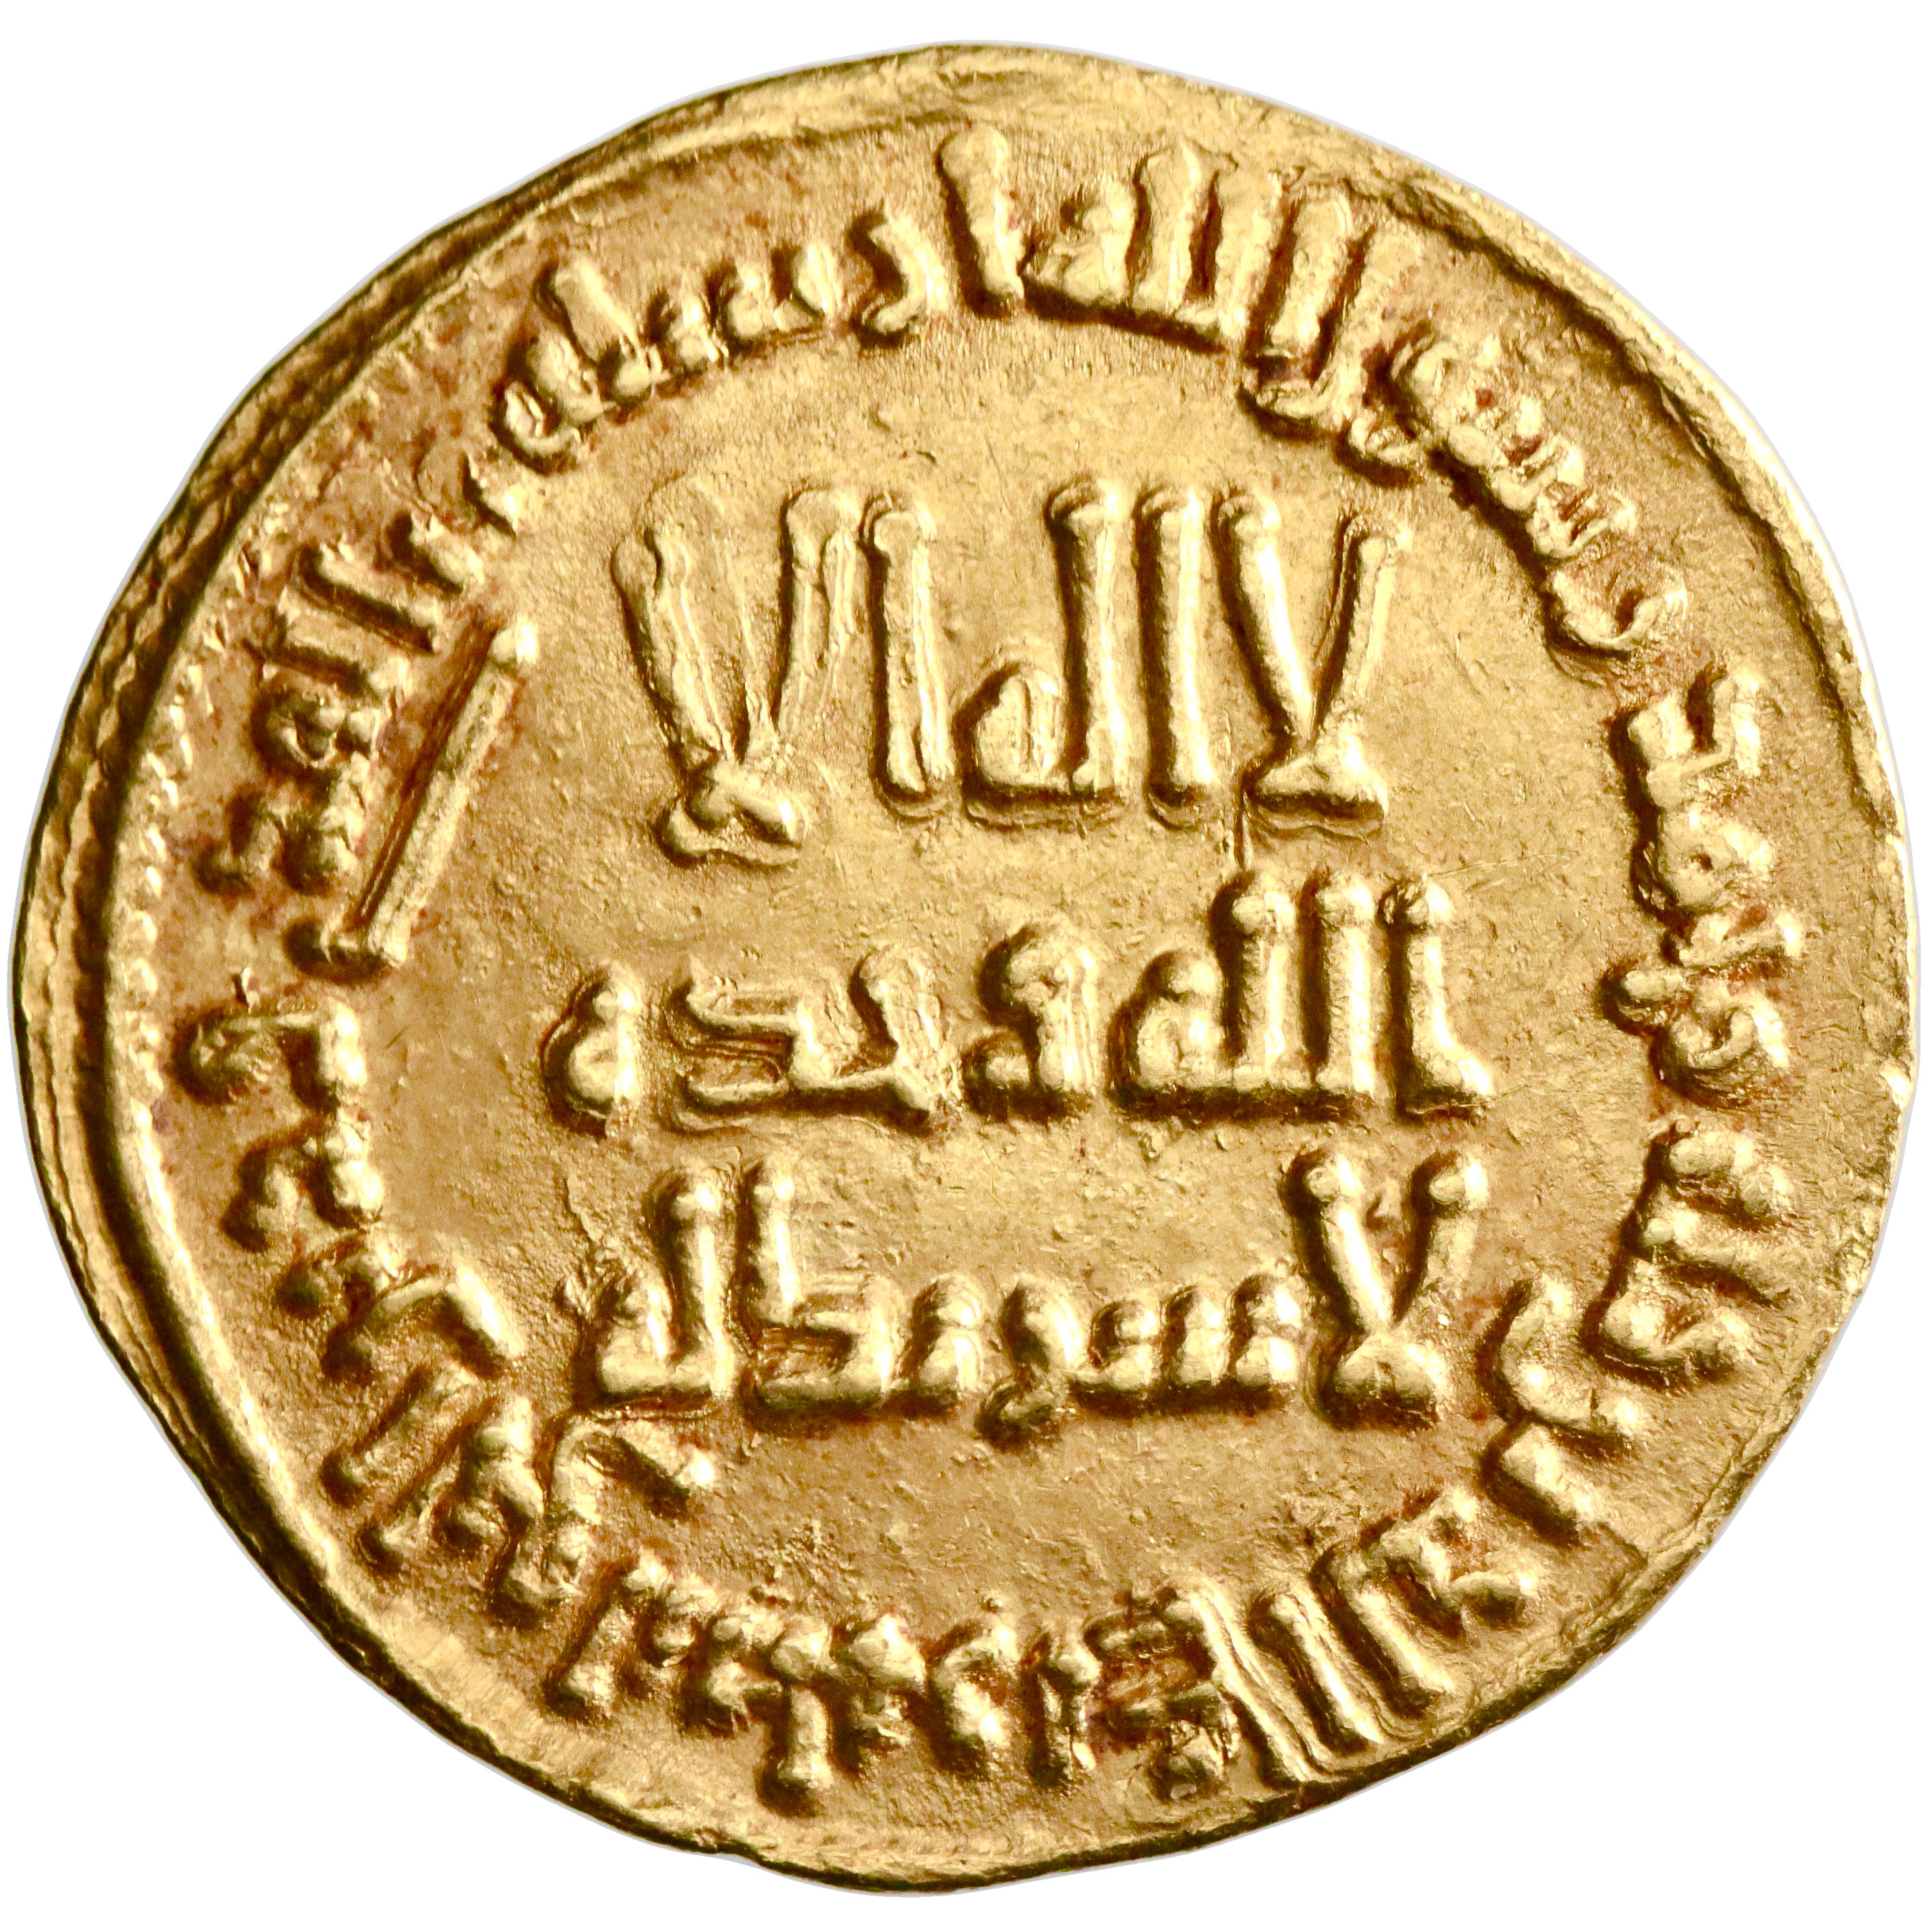 Umayyad, Hisham ibn 'Abd al-Malik, gold dinar, AH 111